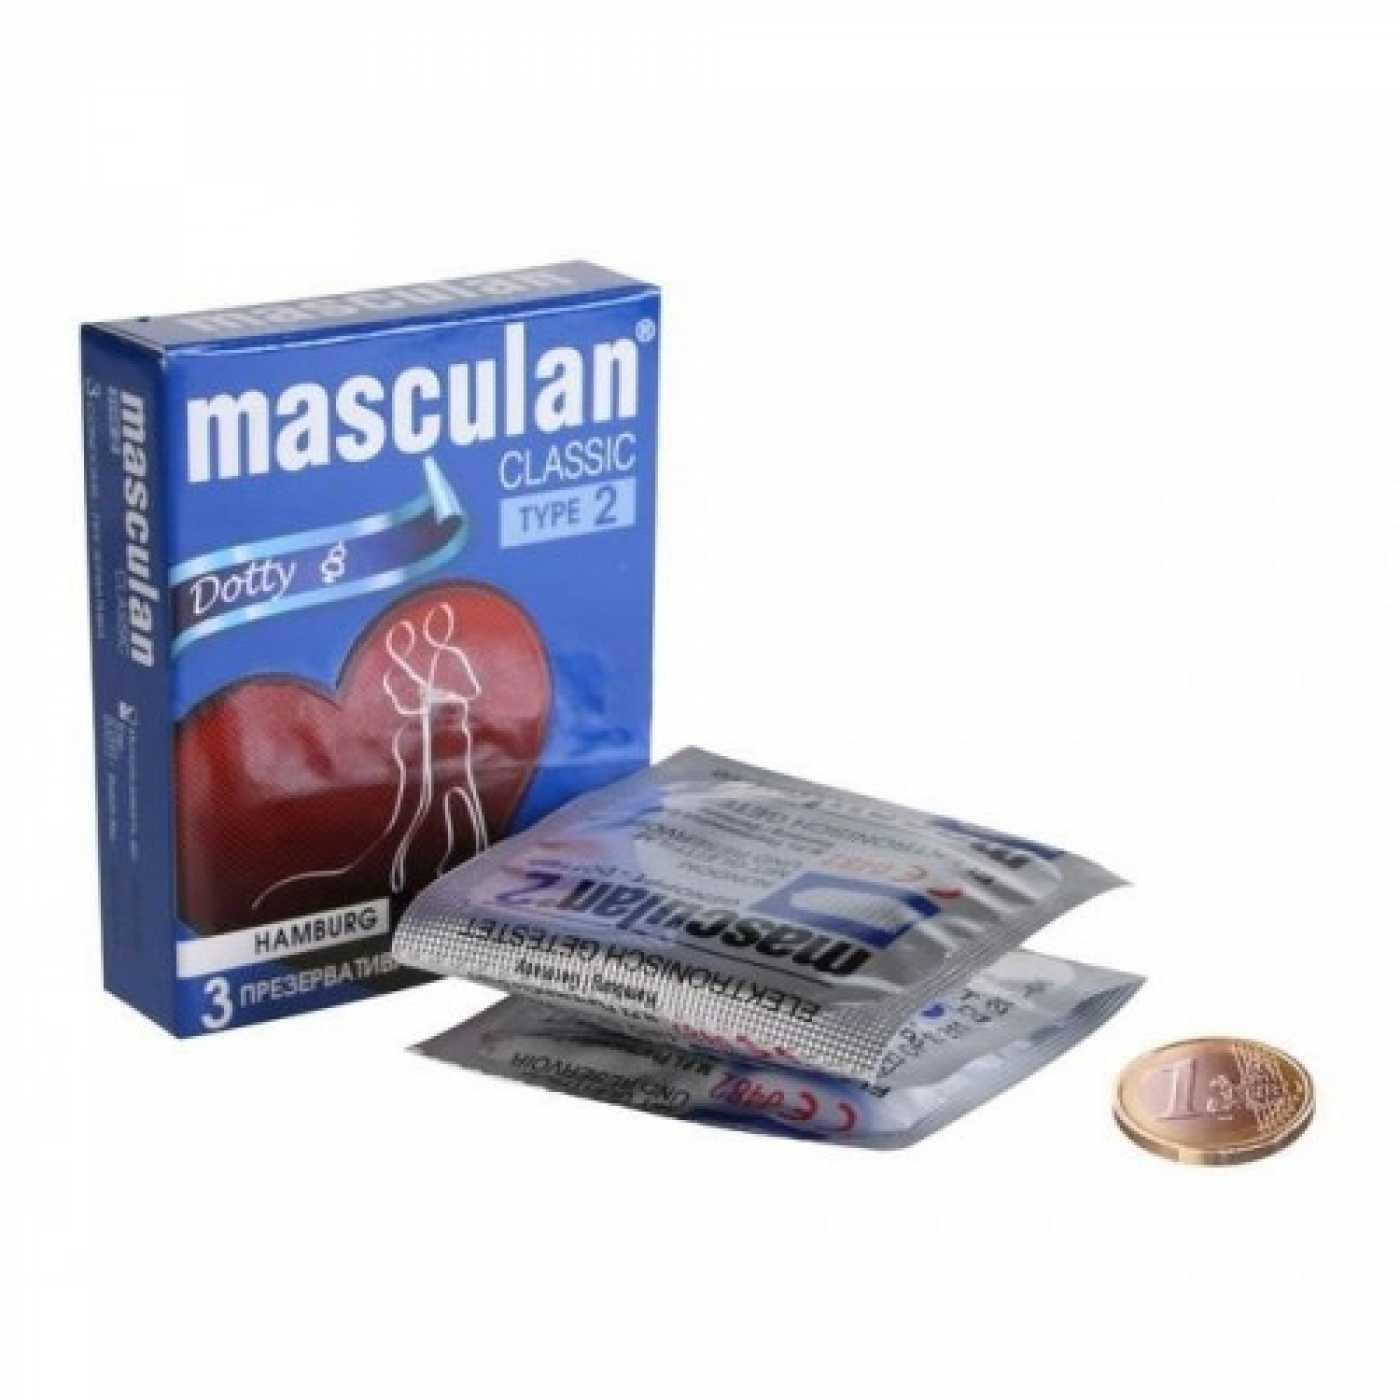 MASCULAN 2 CLASSIC презервативы с пупырышками 3 шт. Vestalshop.ru - Изображение 3